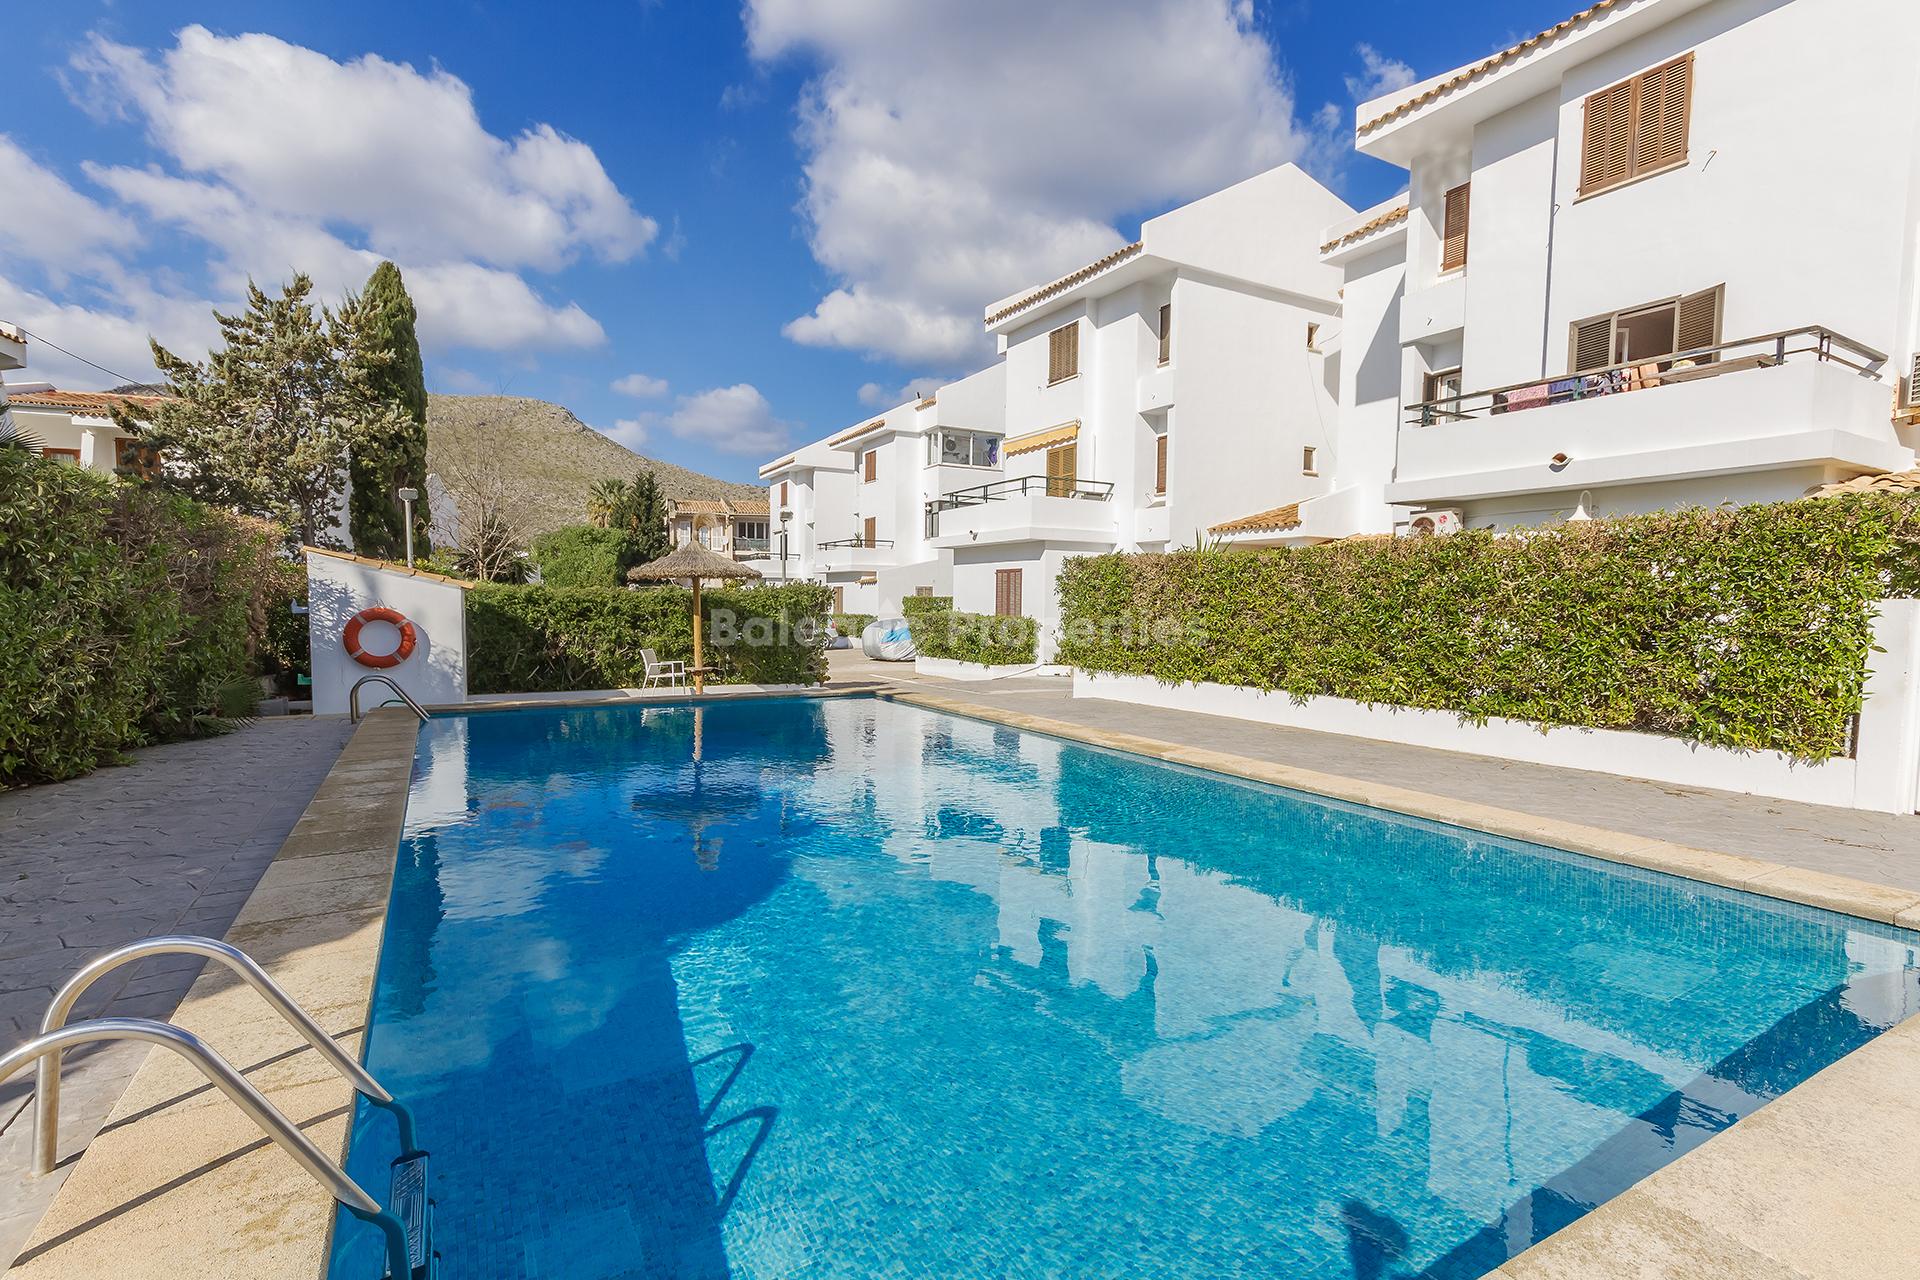 Fantástico apartamento con jardín y piscina comunitaria en venta en Puerto Pollensa, Mallorca